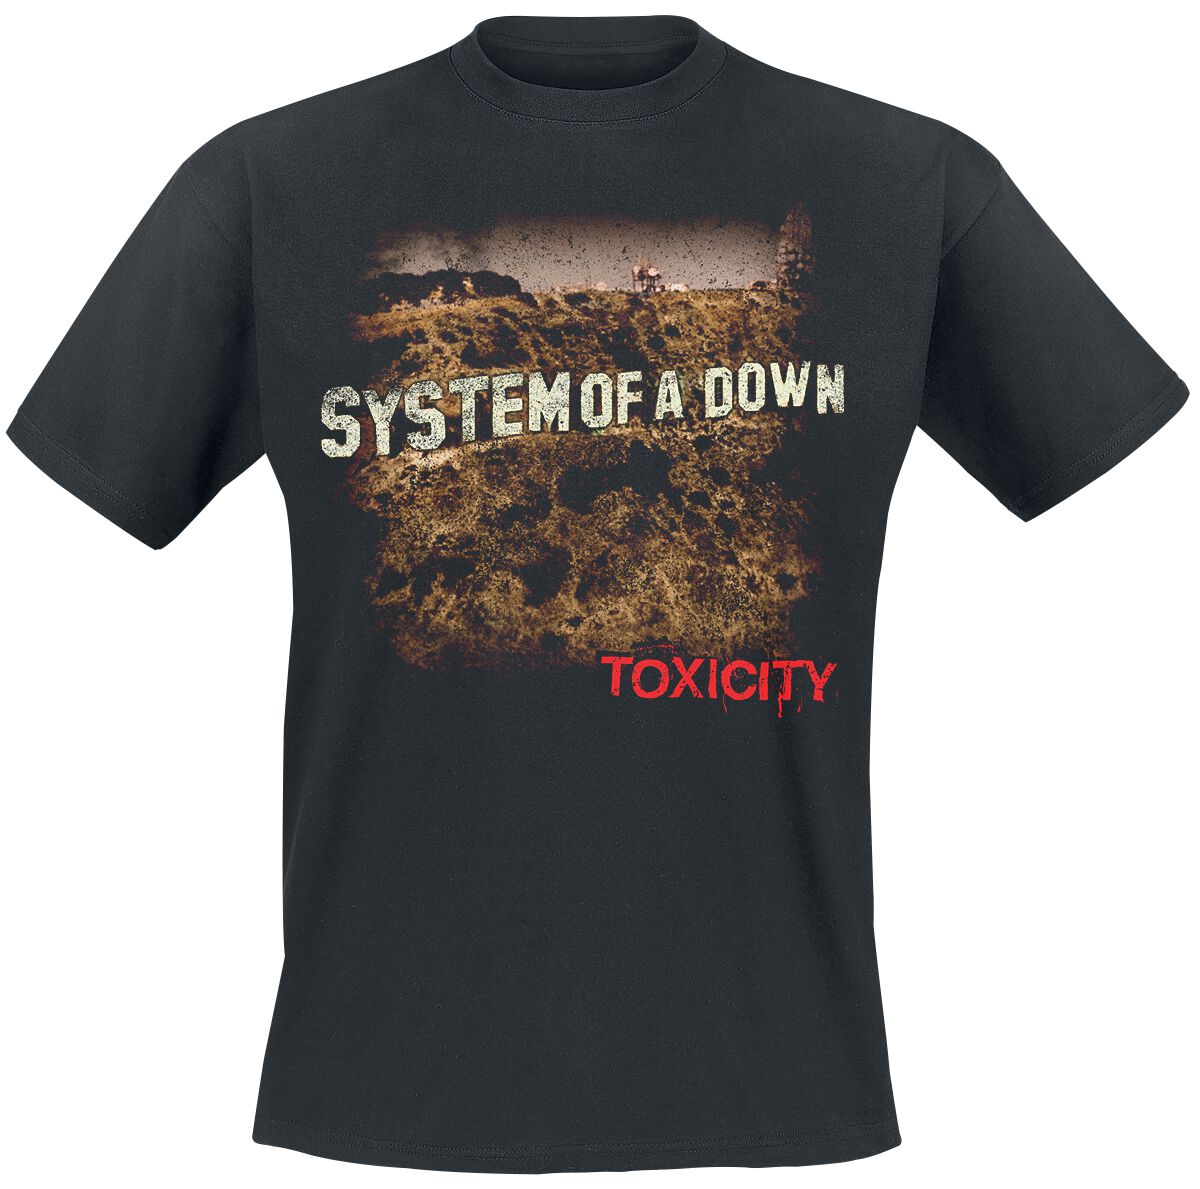 System Of A Down T-Shirt - Toxicity - S bis XXL - für Männer - Größe L - schwarz  - Lizenziertes Merchandise!